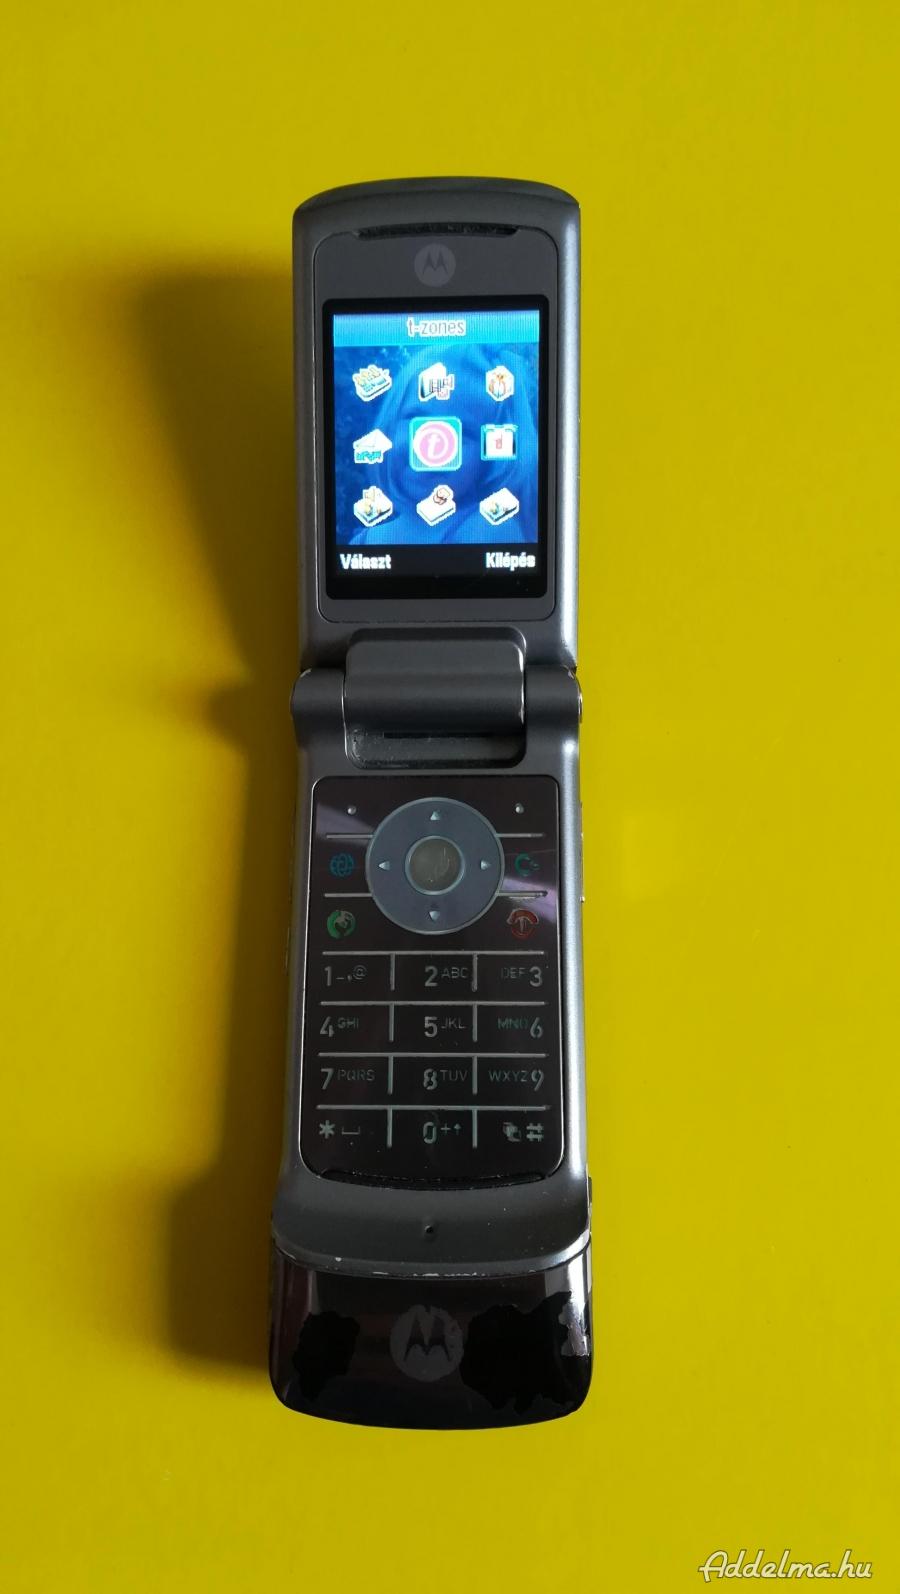 Motorola K1 mobil, jó, telekomos, kicsit kopott az előlap.